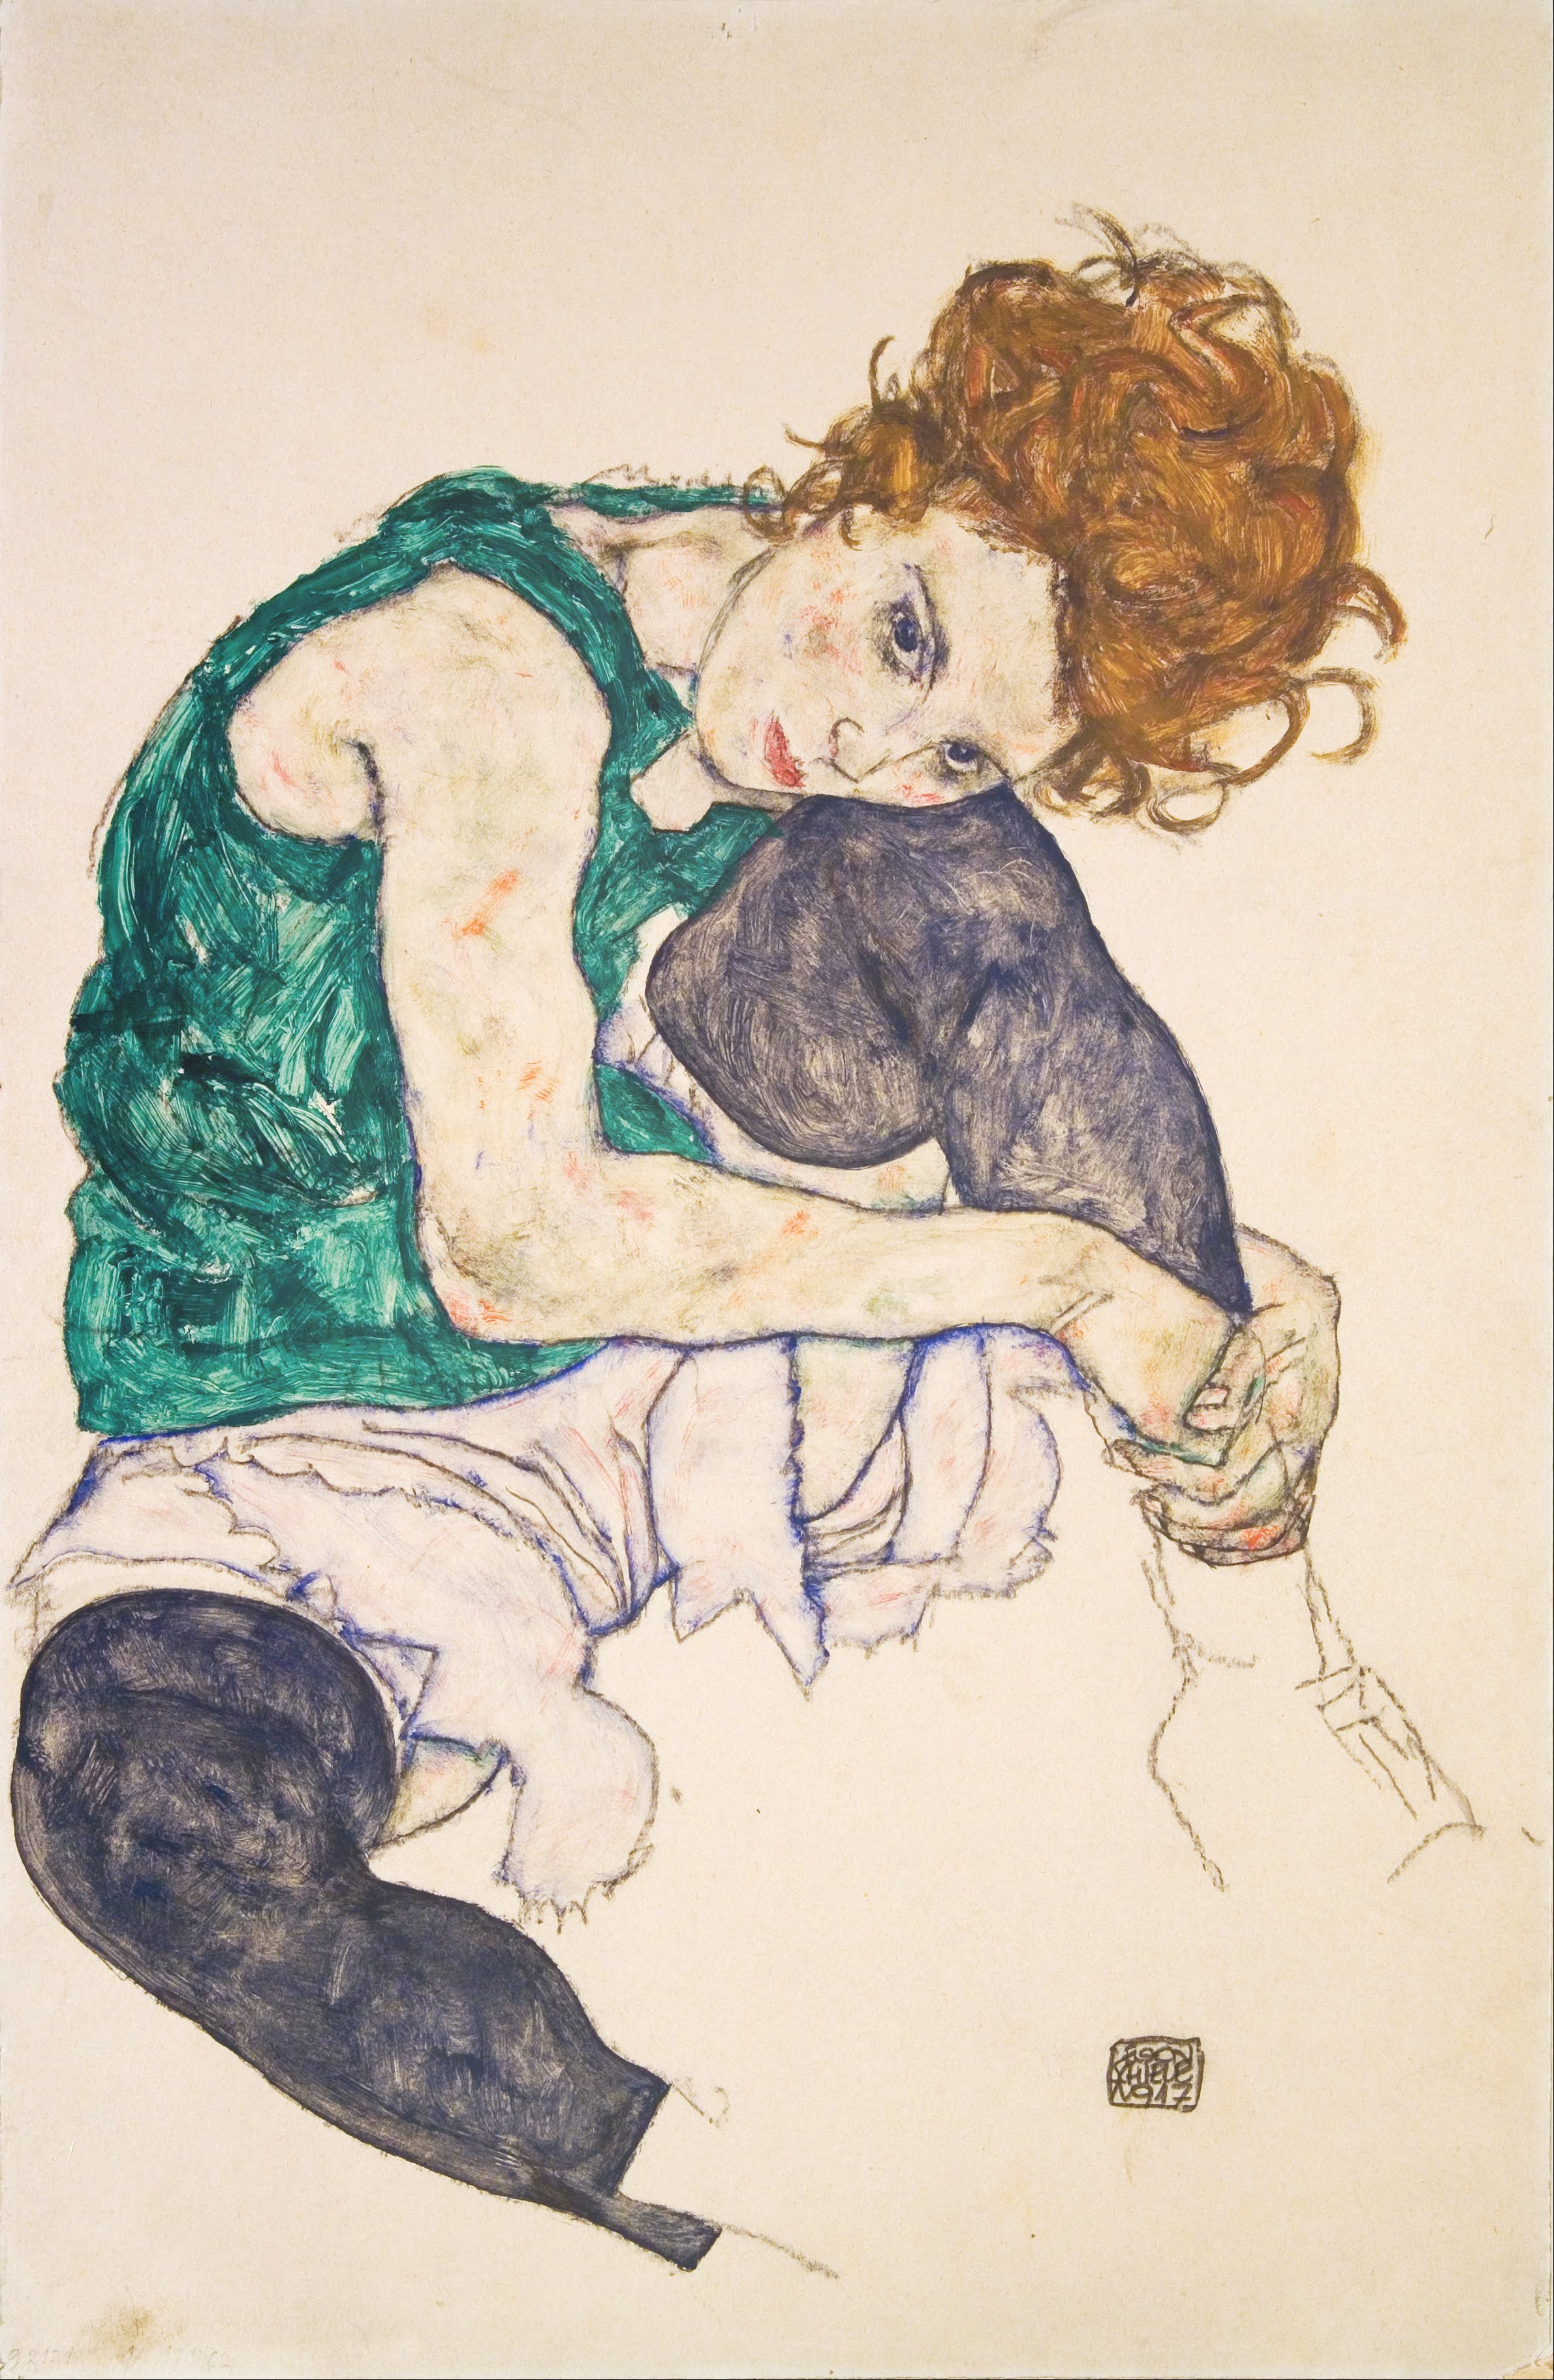 المرأة الجالسة مع ركبتين مثنيتين by Egon Schiele - 1917 م - 46 في 30.5 سم 